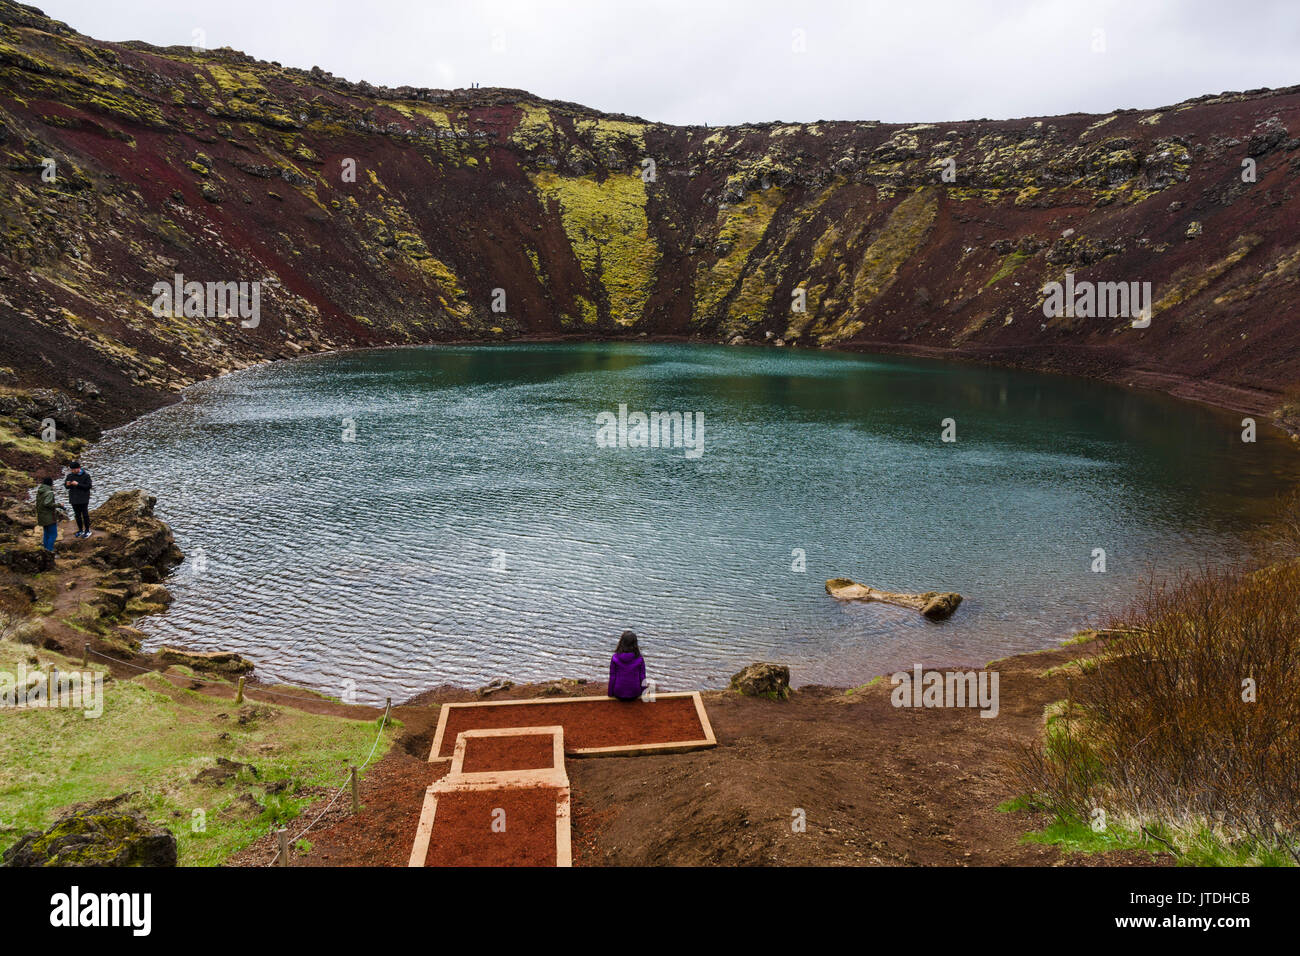 Kerið ist ein Vulkankrater See im Bereich Grímsnes im Süden Islands befindet sich auf der beliebten touristischen Route wie der Golden Circle bekannt. Stockfoto